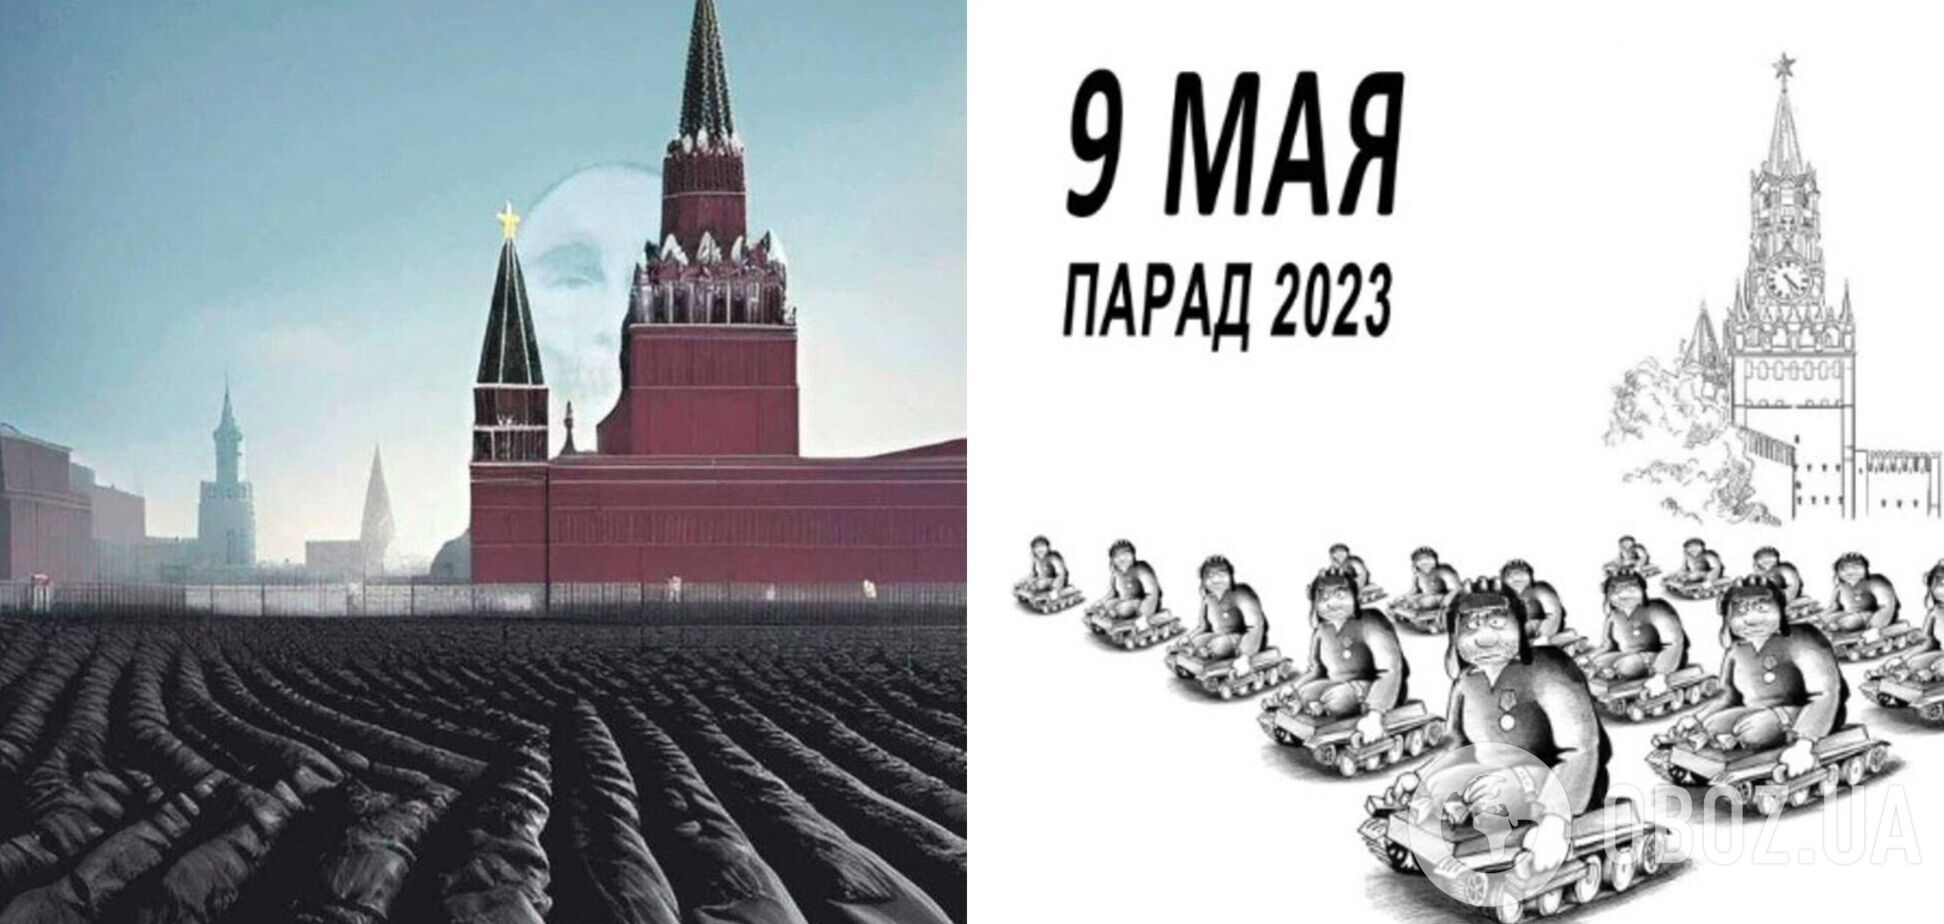 Черные мешки вместо солдат на фоне Кремля: в сети высмеяли 'победобесие' в Москве и показали, каким должен быть парад в РФ на 9 мая. Фото и видео